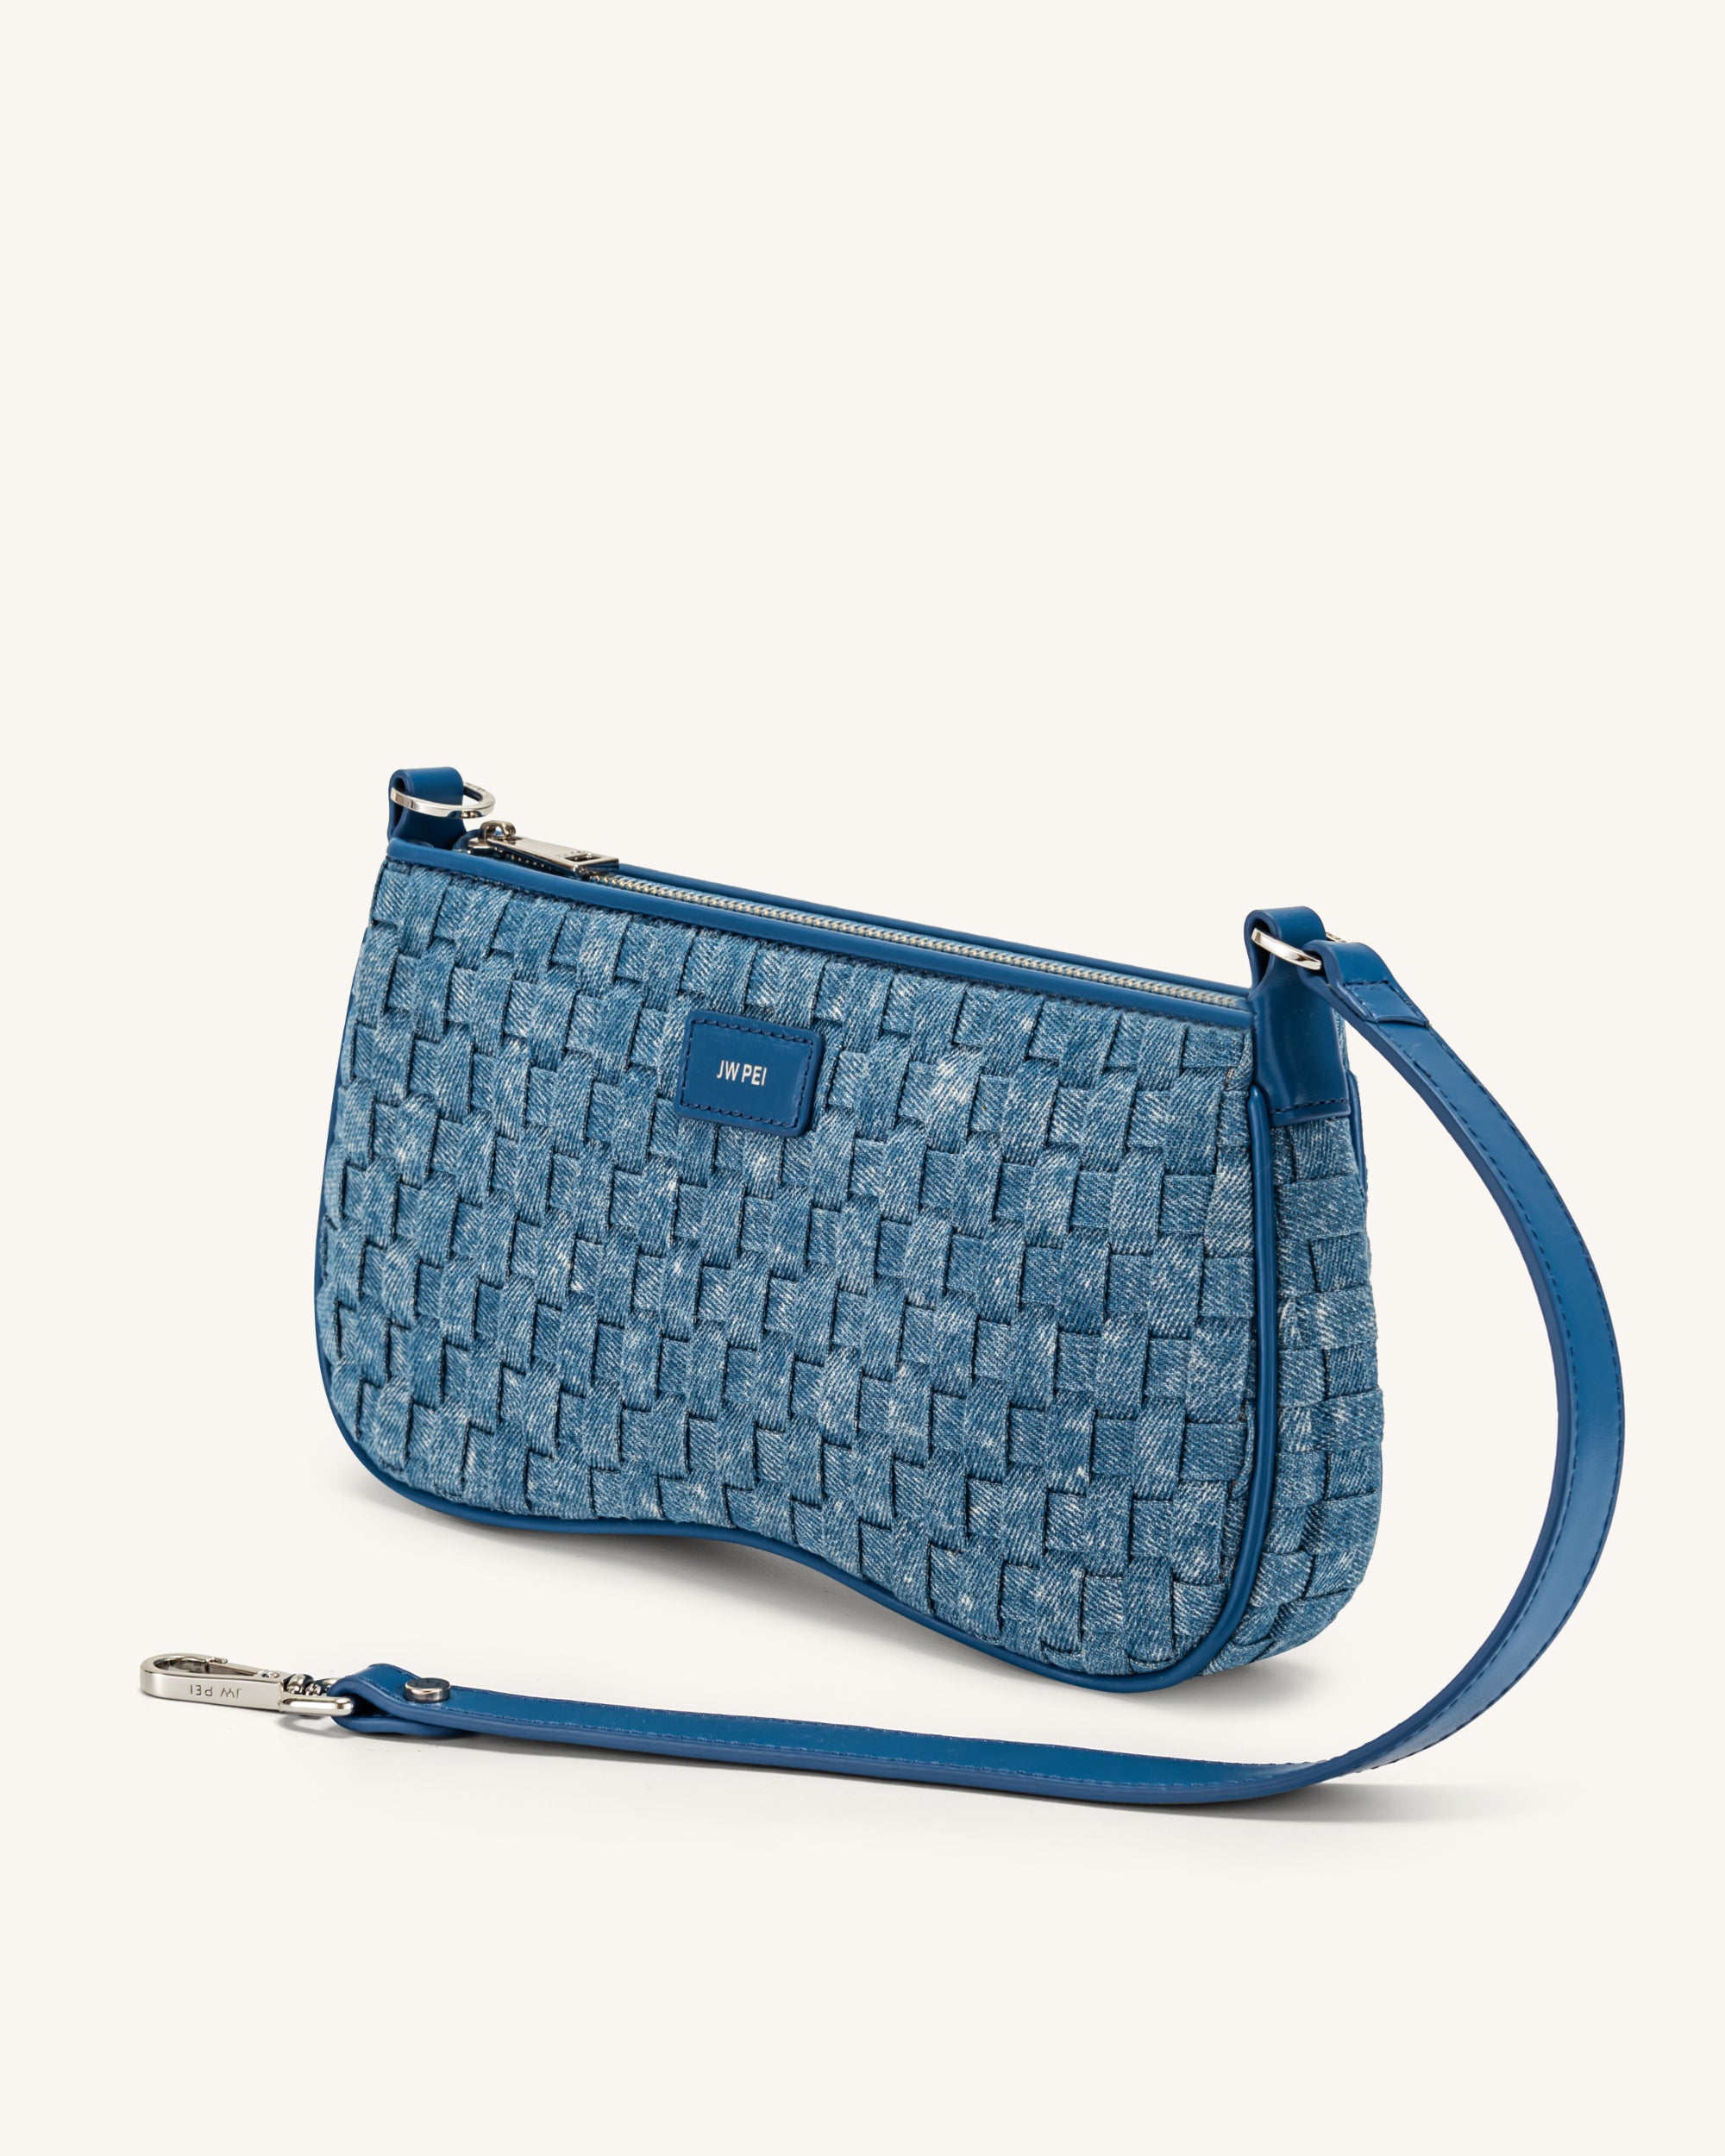 JW Pei Women's Shoulder Bags - Blue